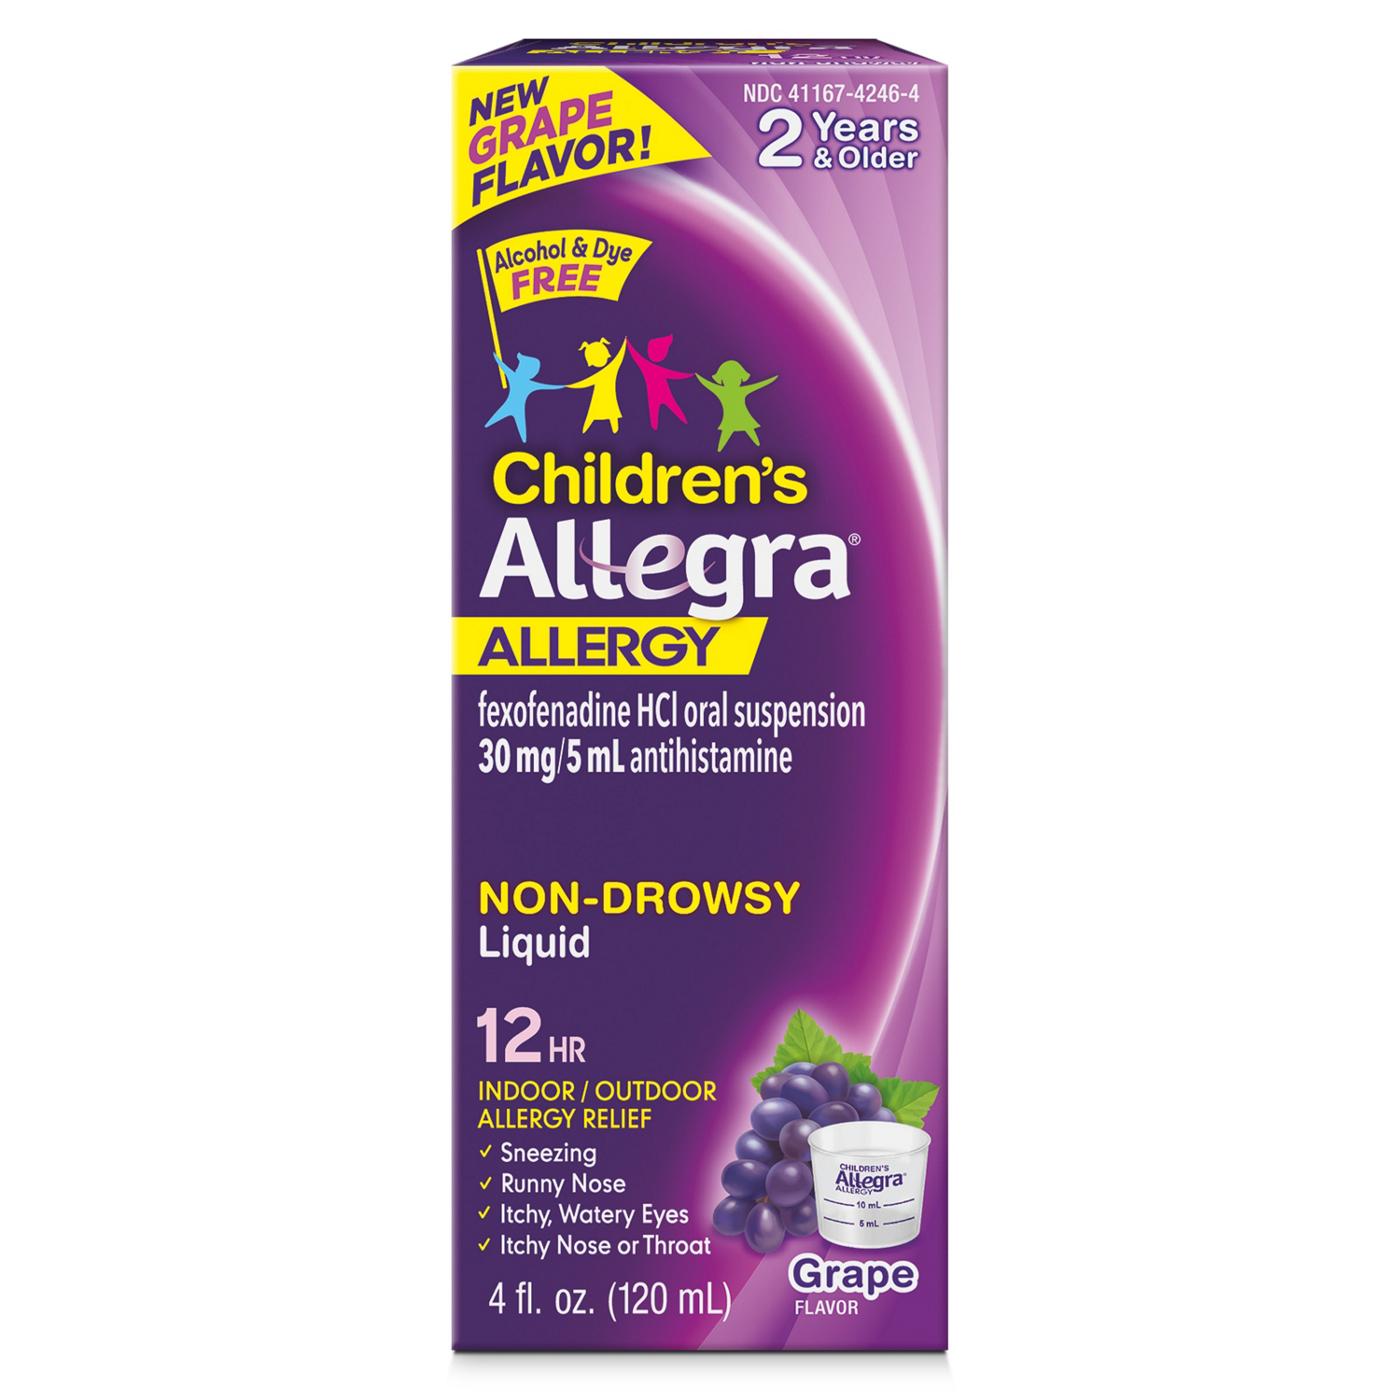 Allegra Children's Allergy 12 Hour Non-Drowsy Liquid - Grape; image 1 of 6